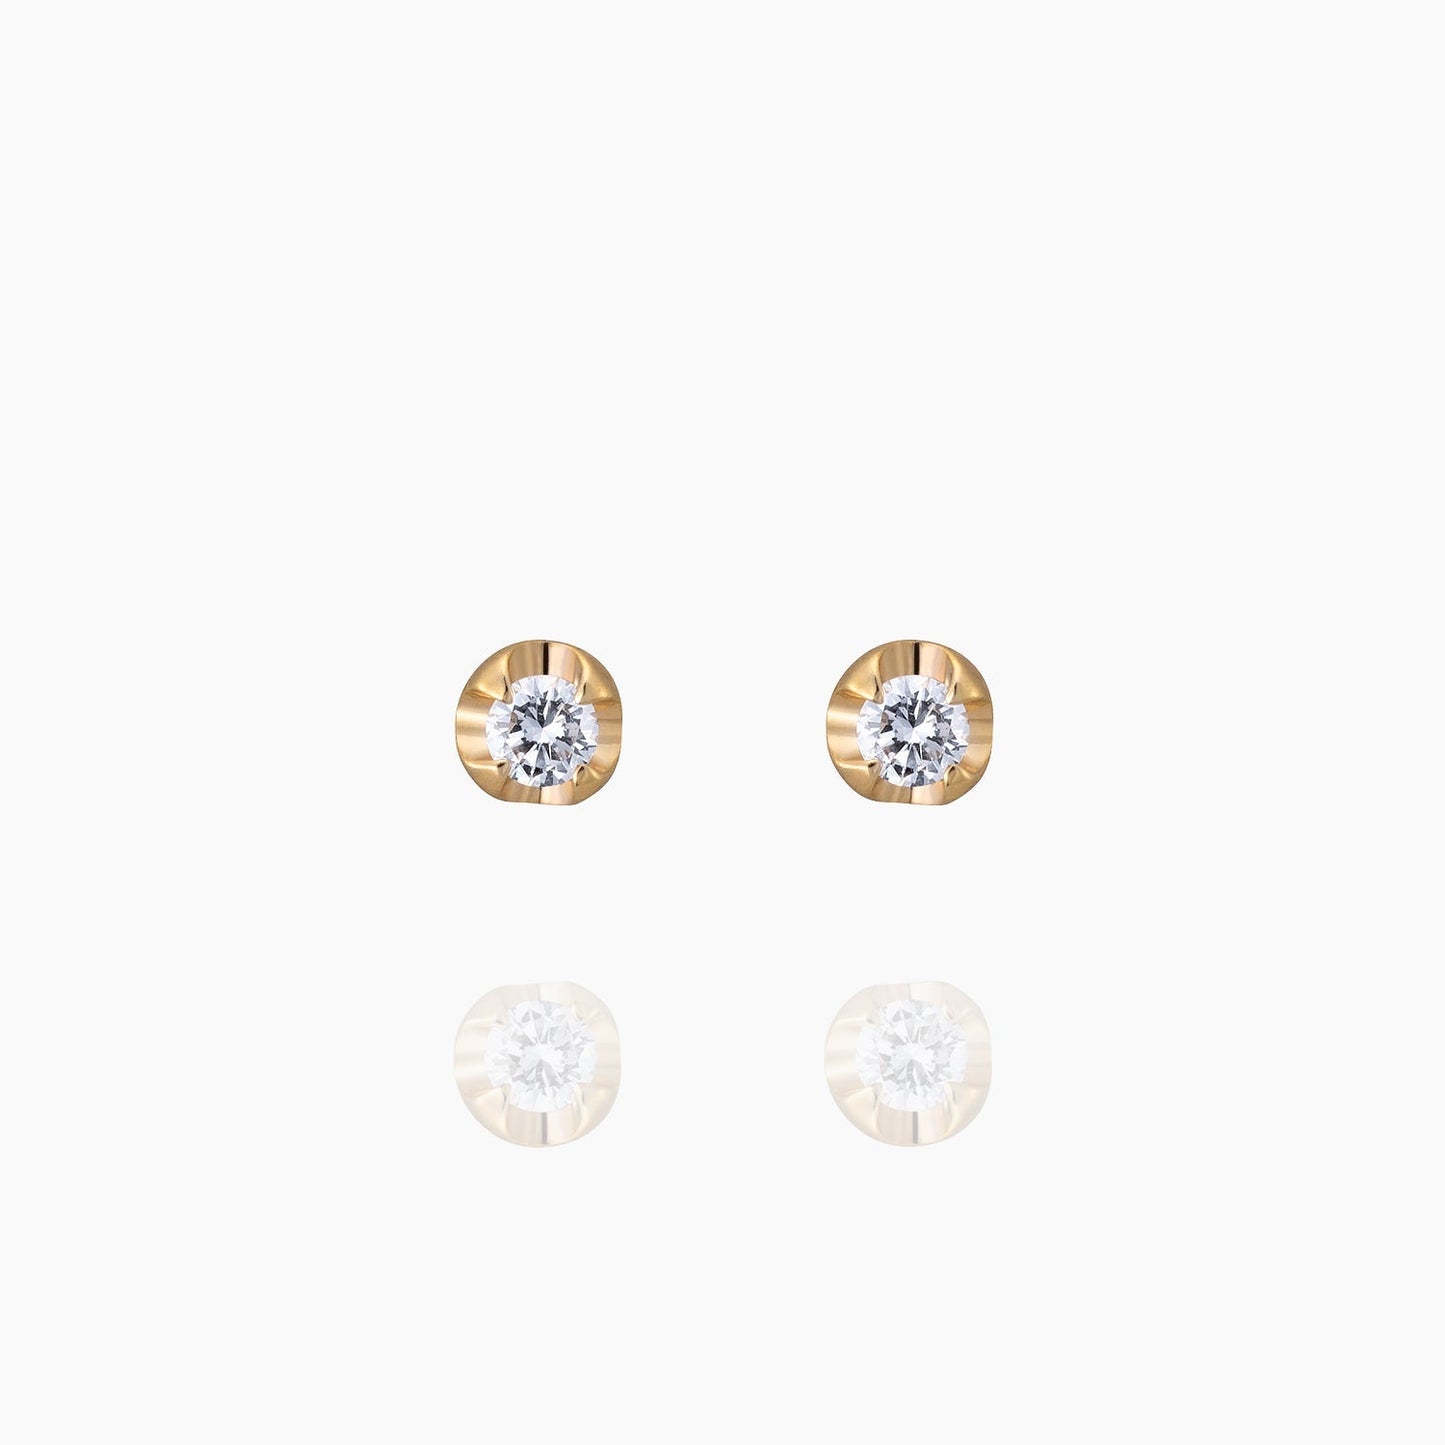 Silas サイラス ピアス 宝石は天然ダイヤモンド 計0.04ct 素材はK10のピンクゴールド 商品番号MA36 正面